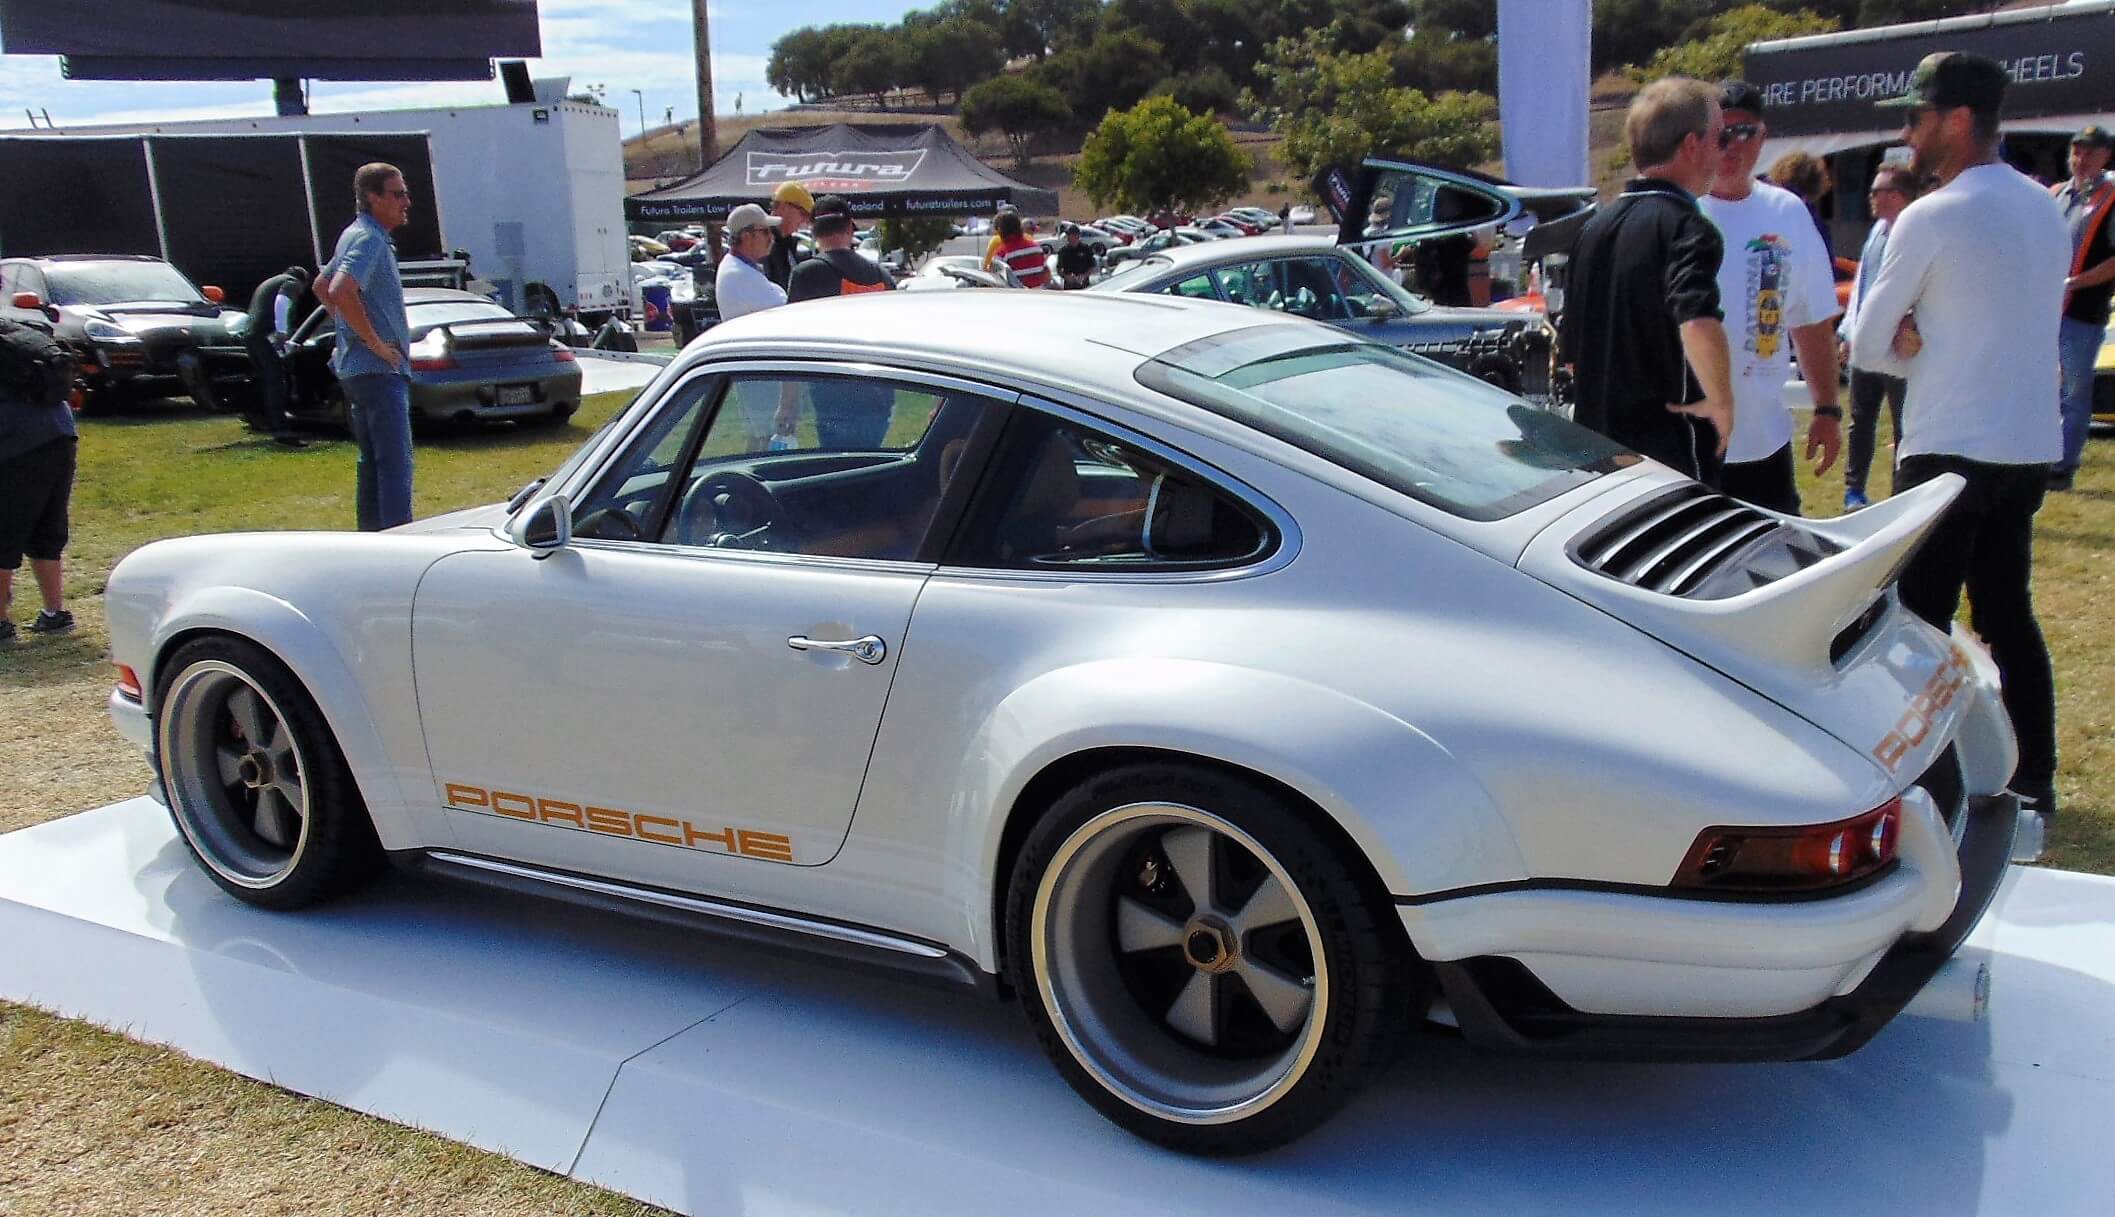 The “eternal Porsche 911” the Porsche 911 white